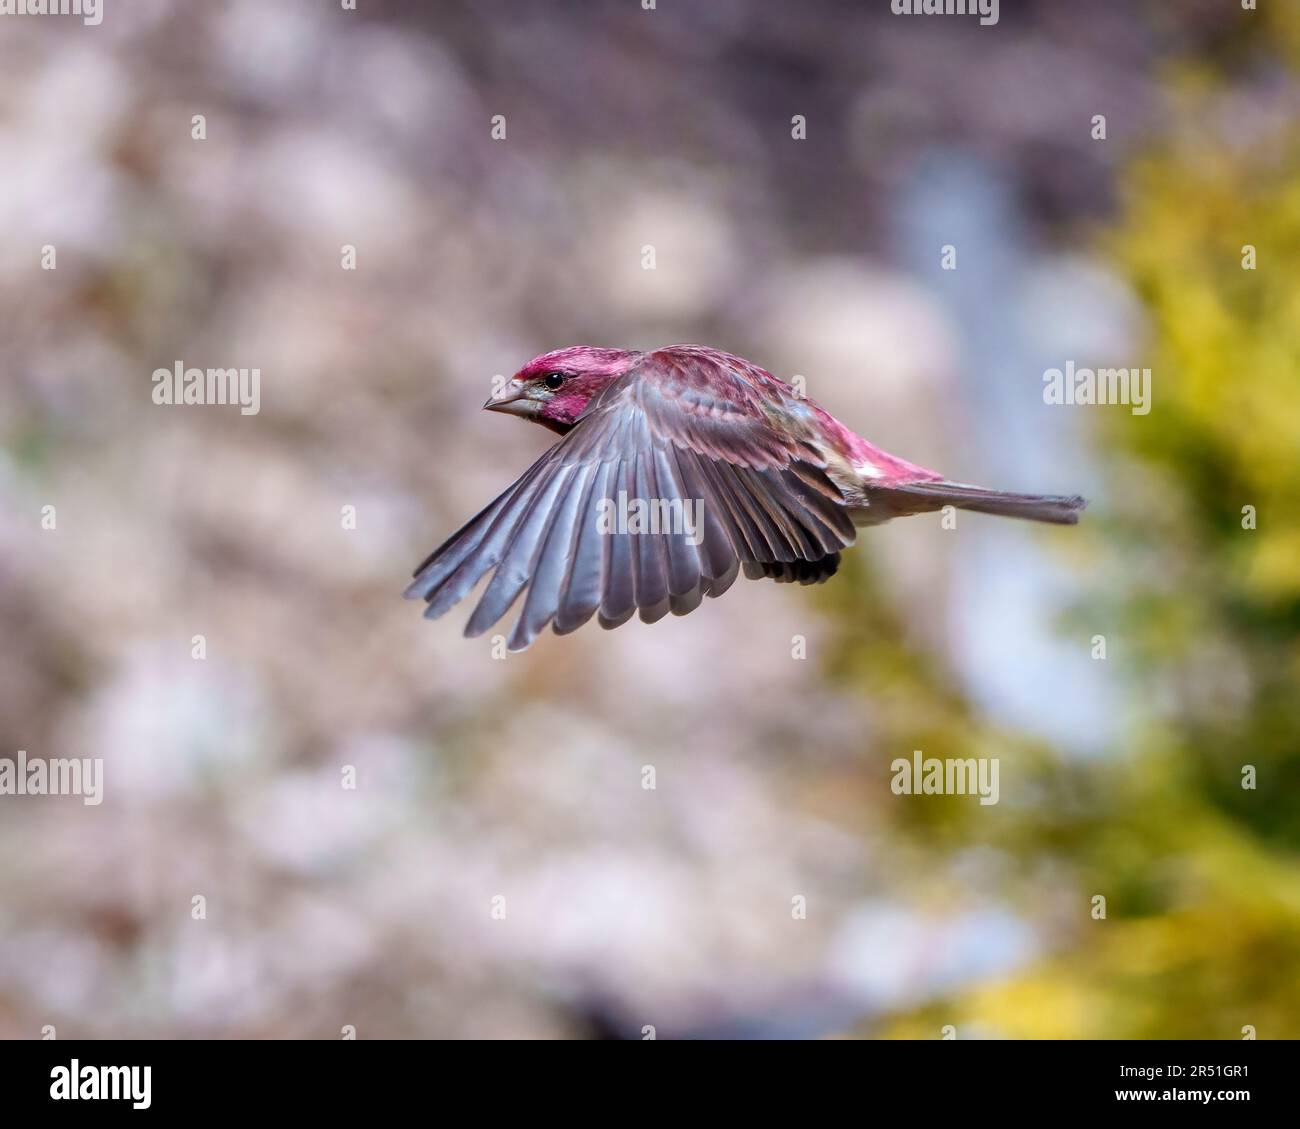 Finch macho volando con sus hermosas alas de color rojo con un fondo borroso en su entorno y hábitat. Vuelo de aves. Finch morado. Foto de stock